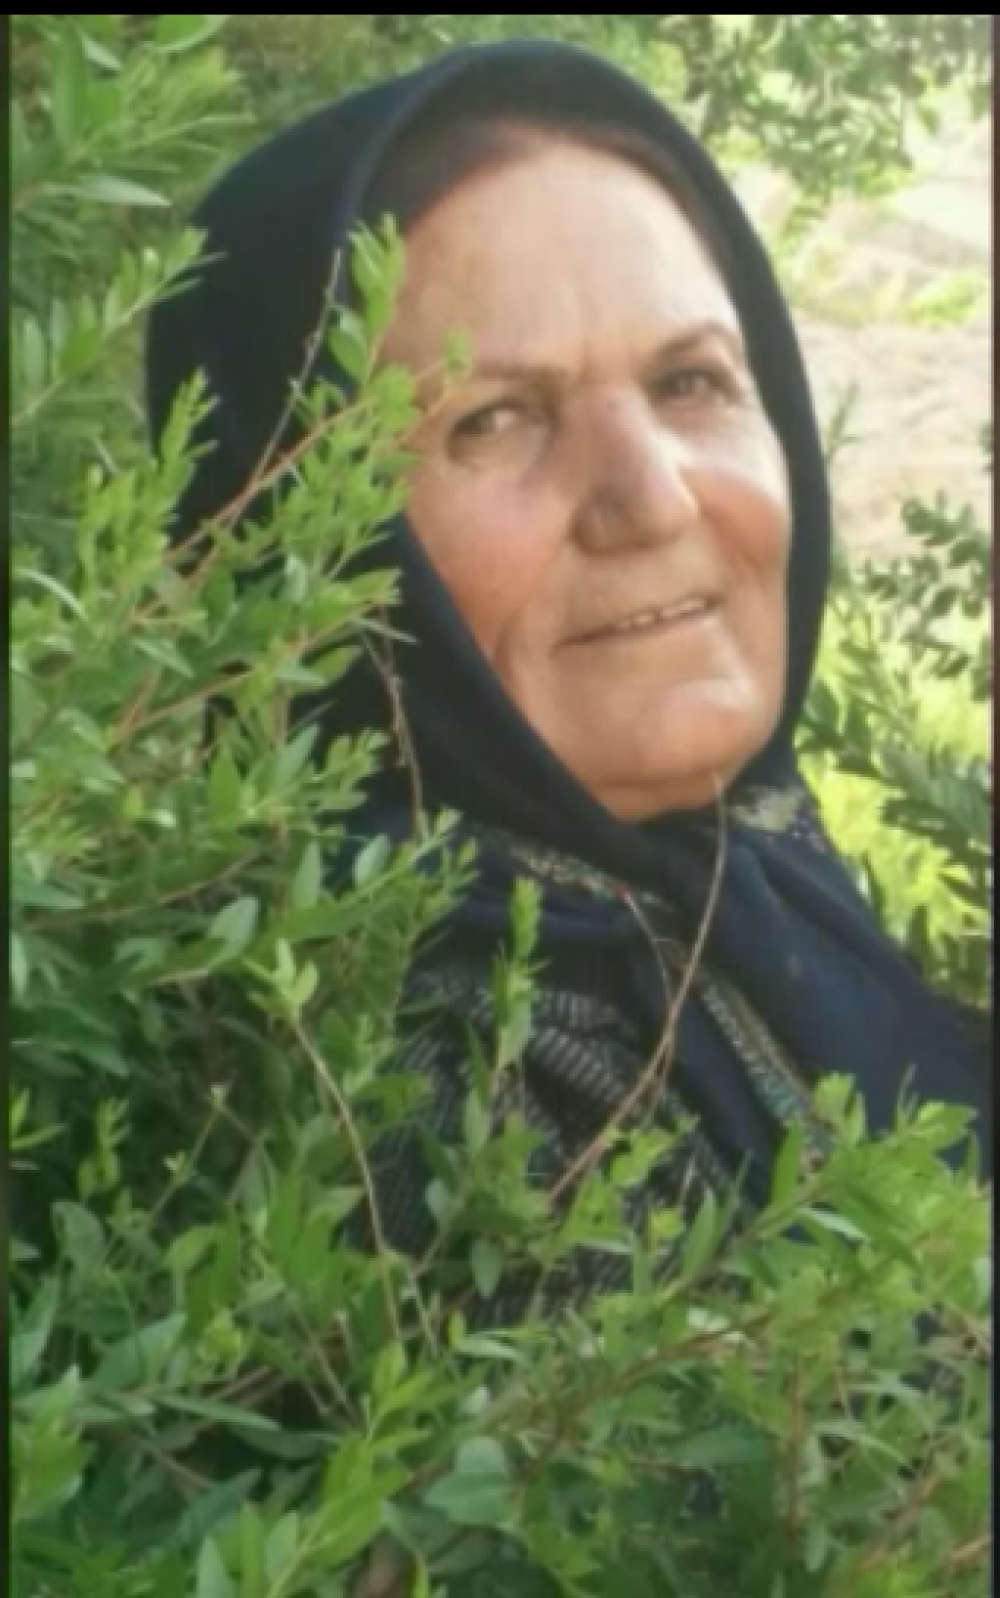 شادی روح تمام در گذشتگان و مادر مهریانم سیده تاج خانم حسینی